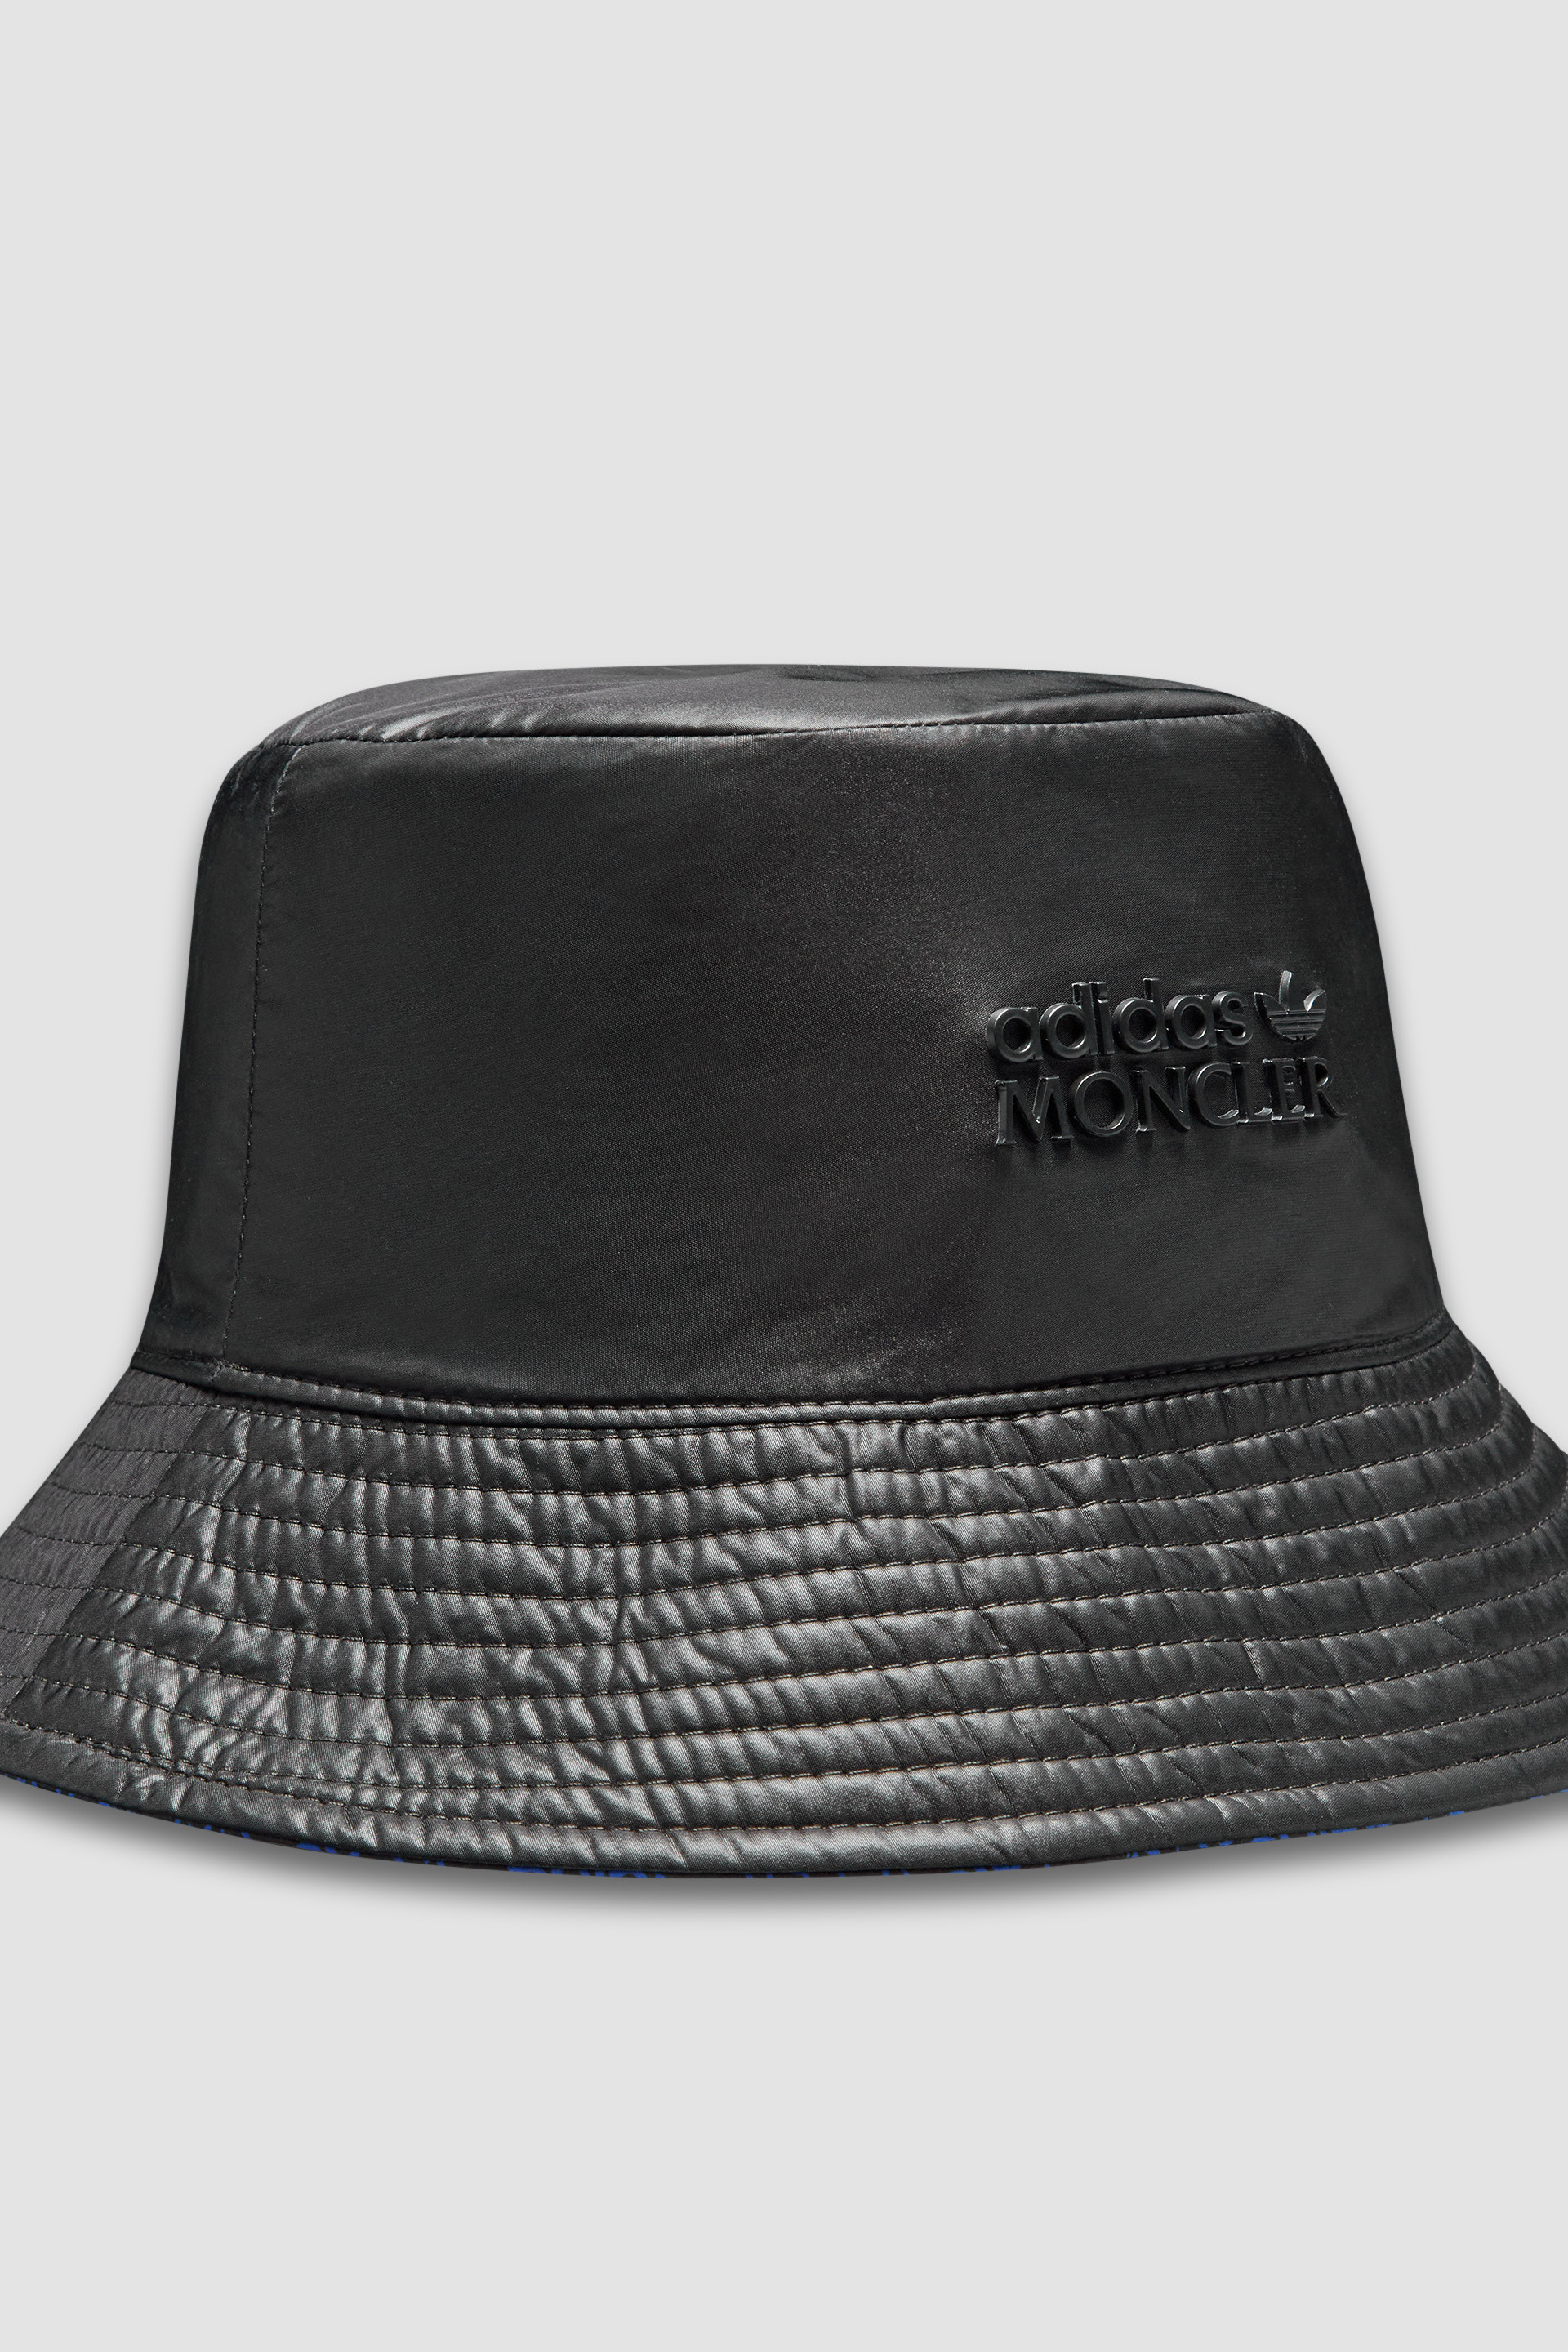 ブラック & ブルー バケットハット : Moncler x adidas Originals 向け 